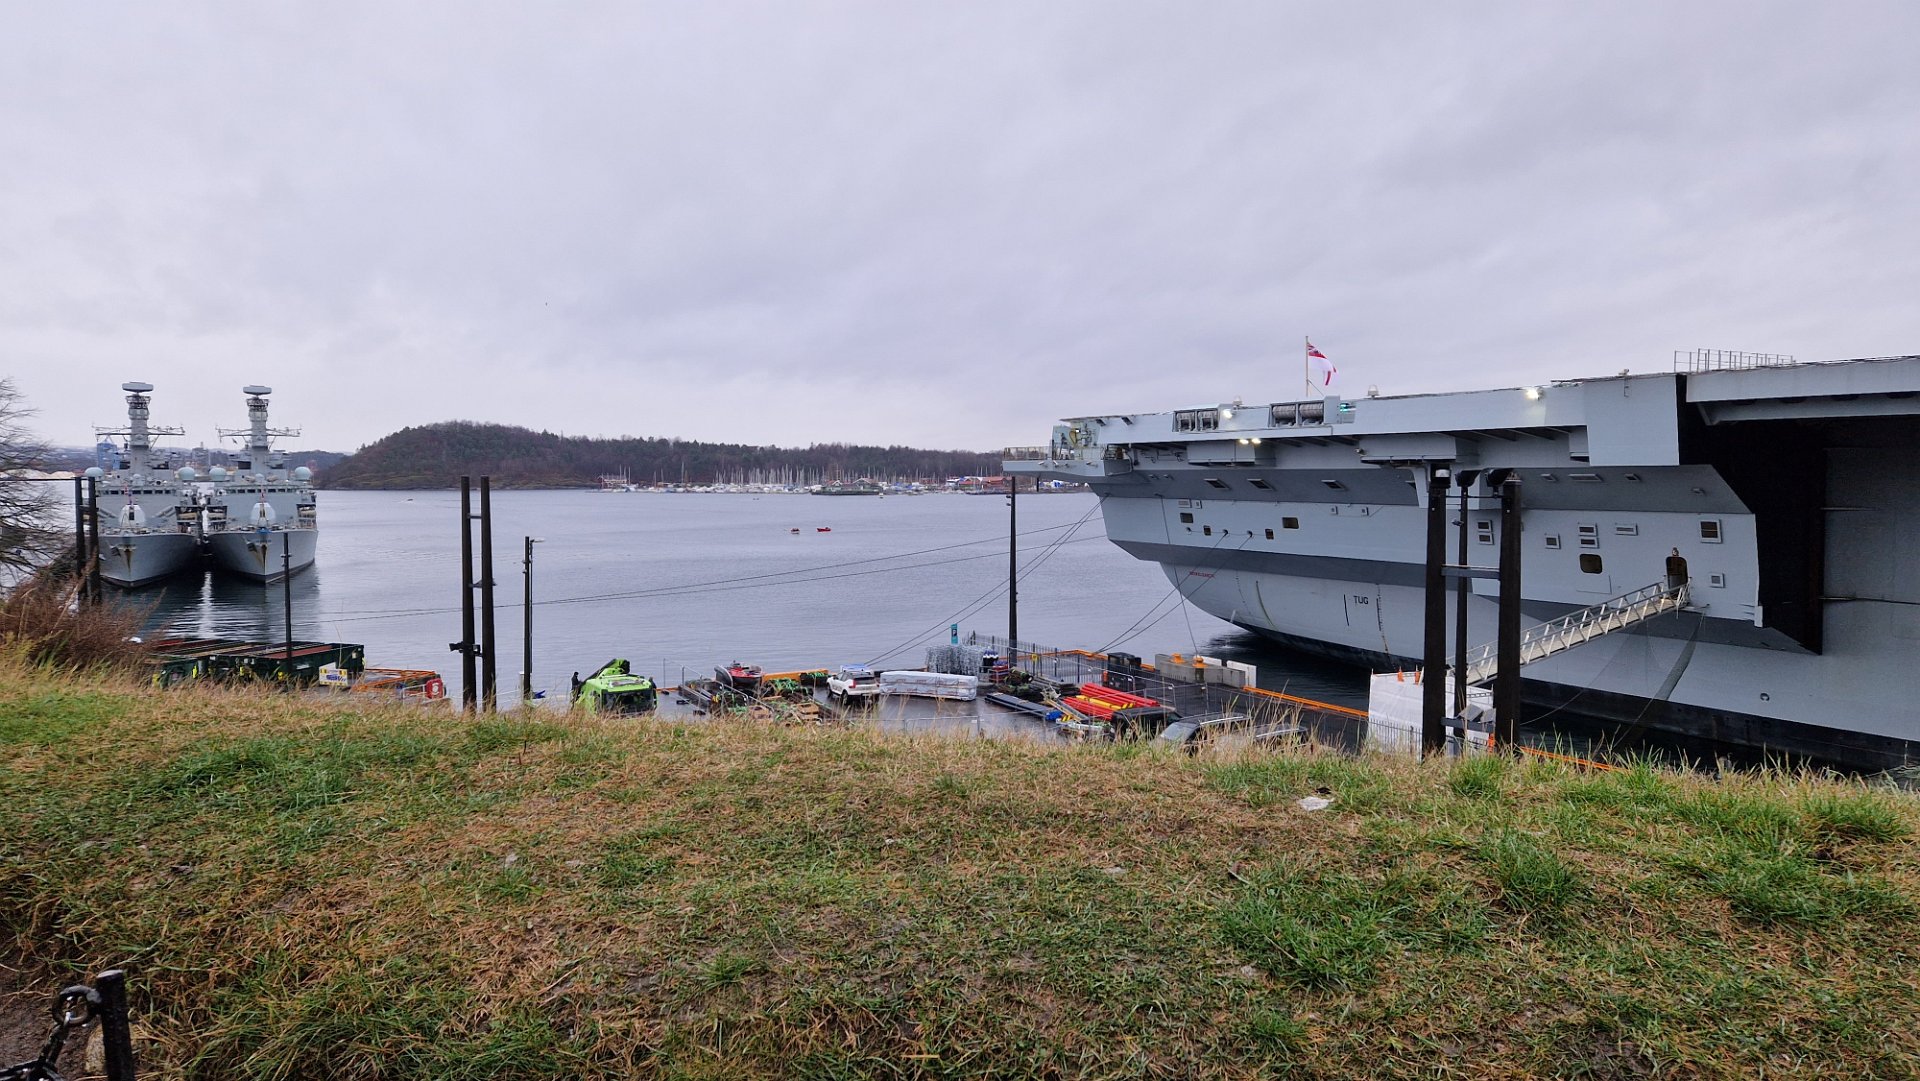 Type 23 frigates in Oslo